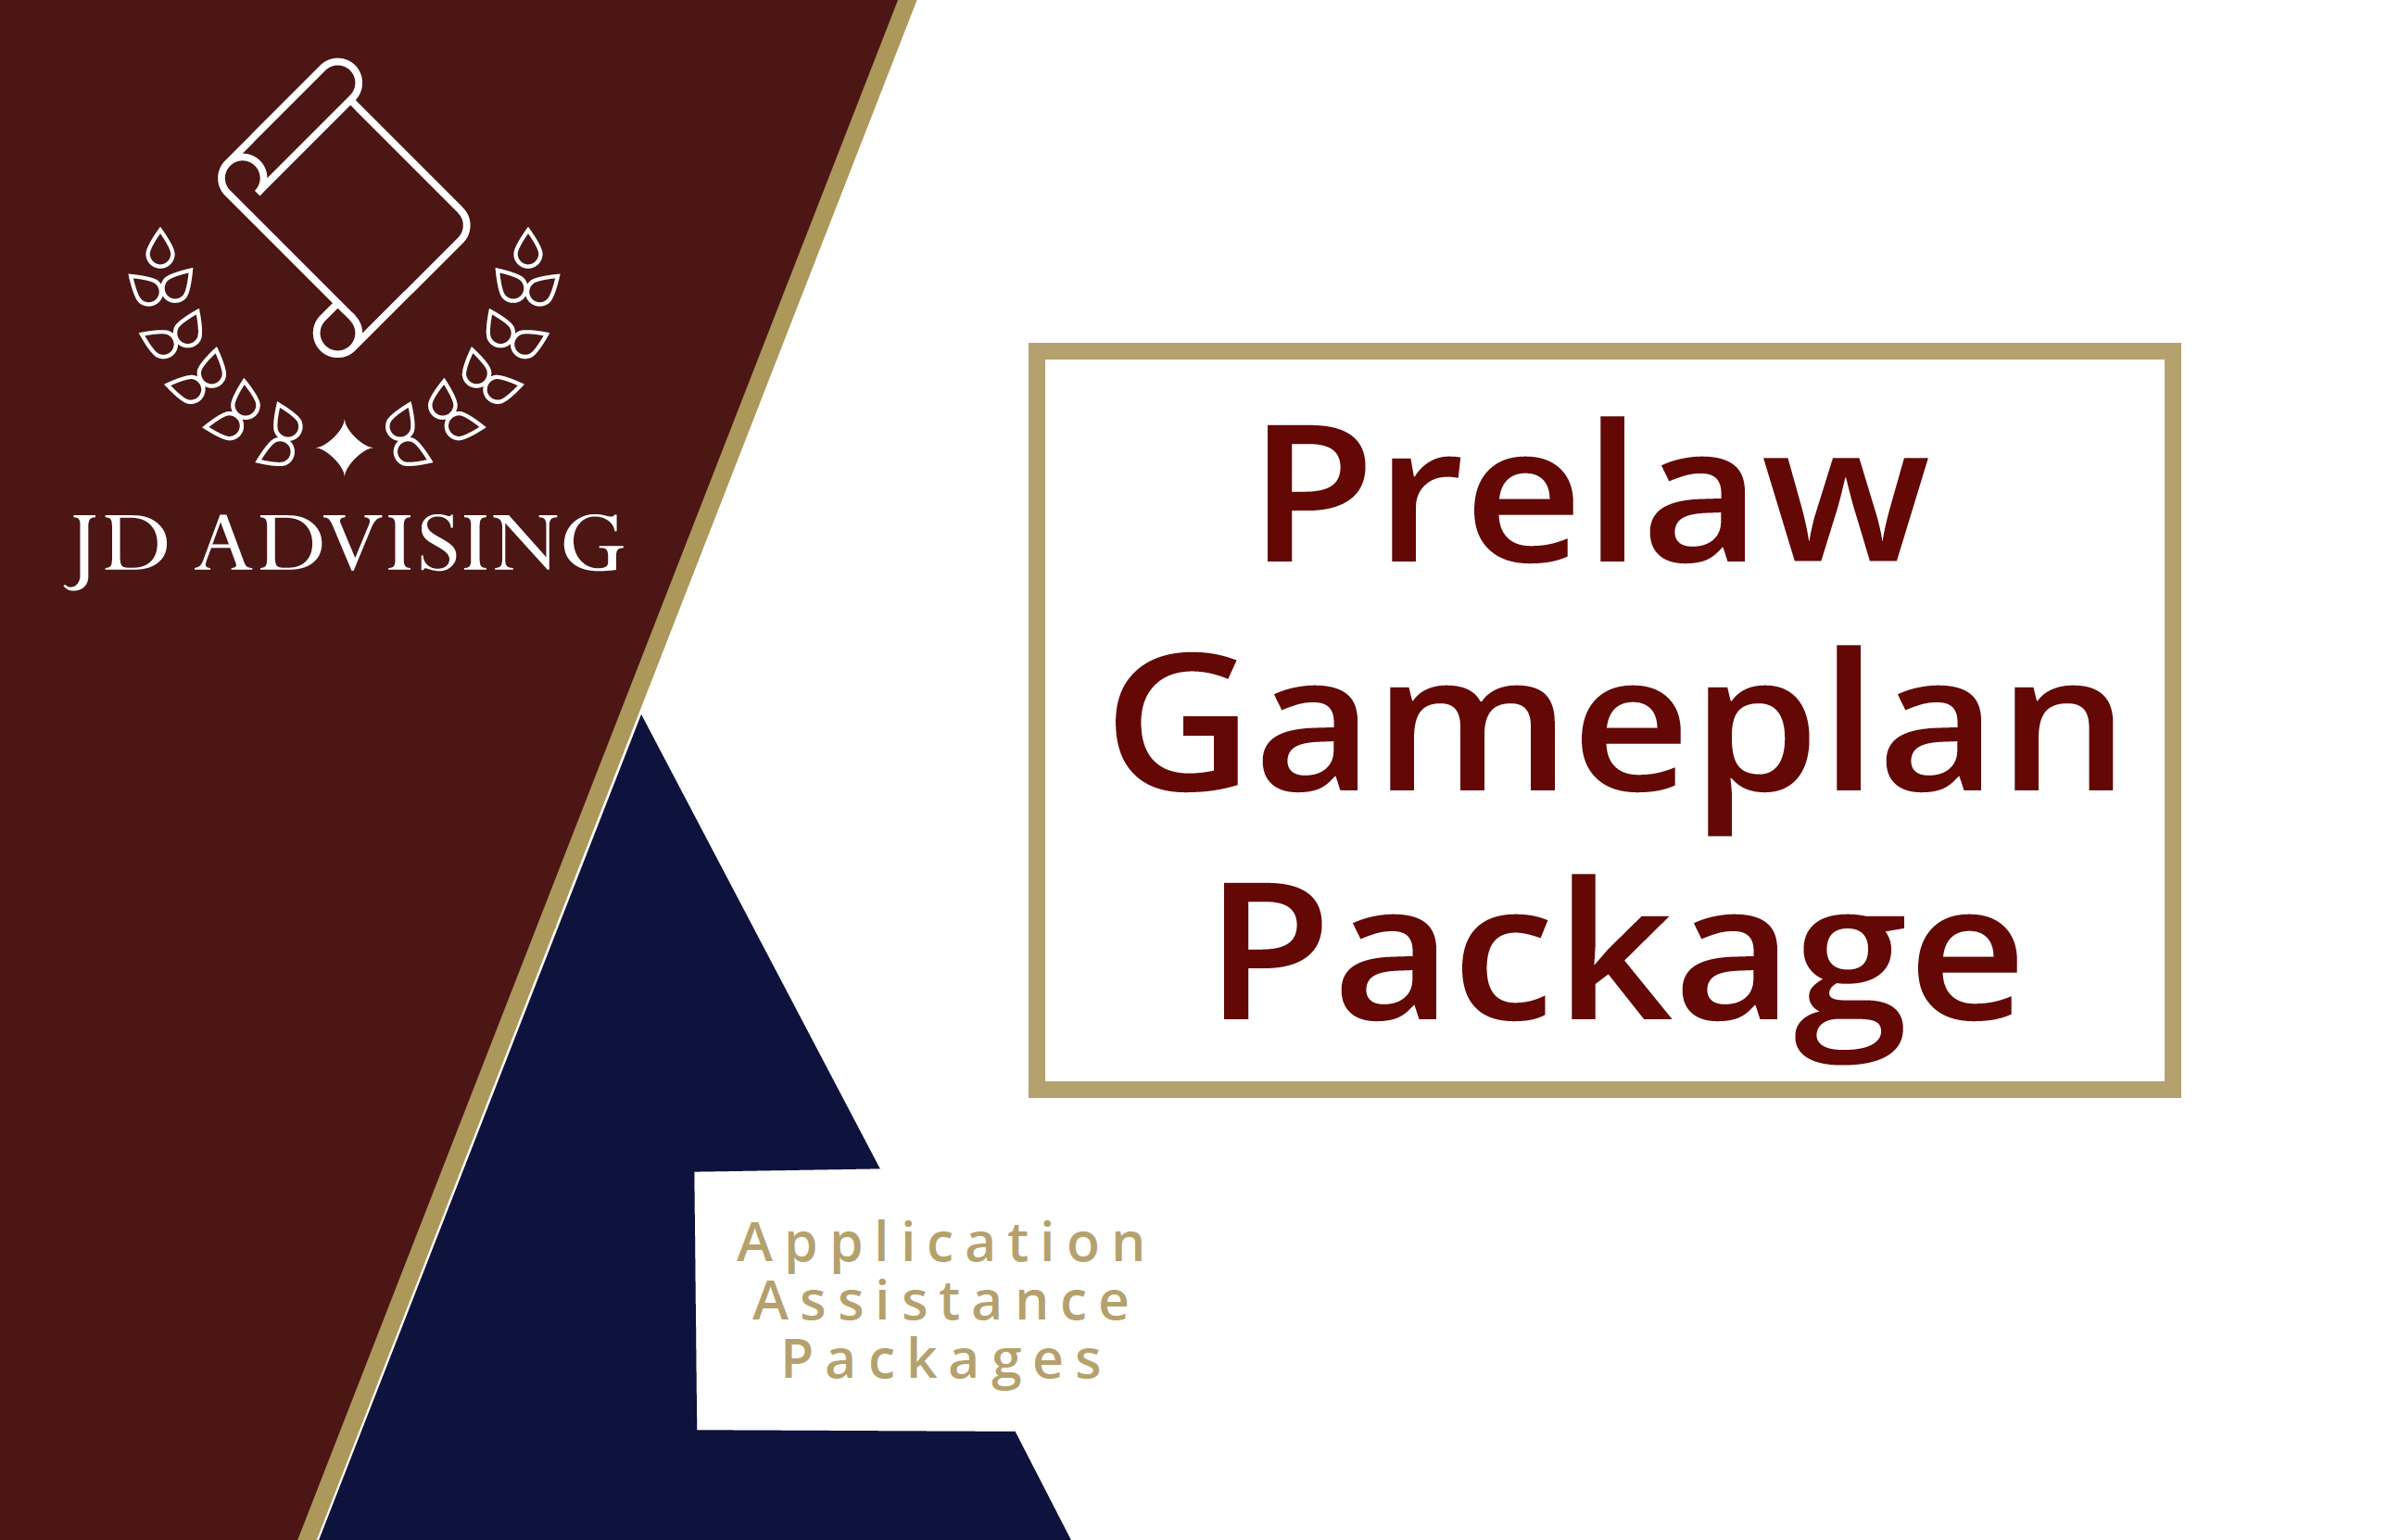 Prelaw Gameplan Package